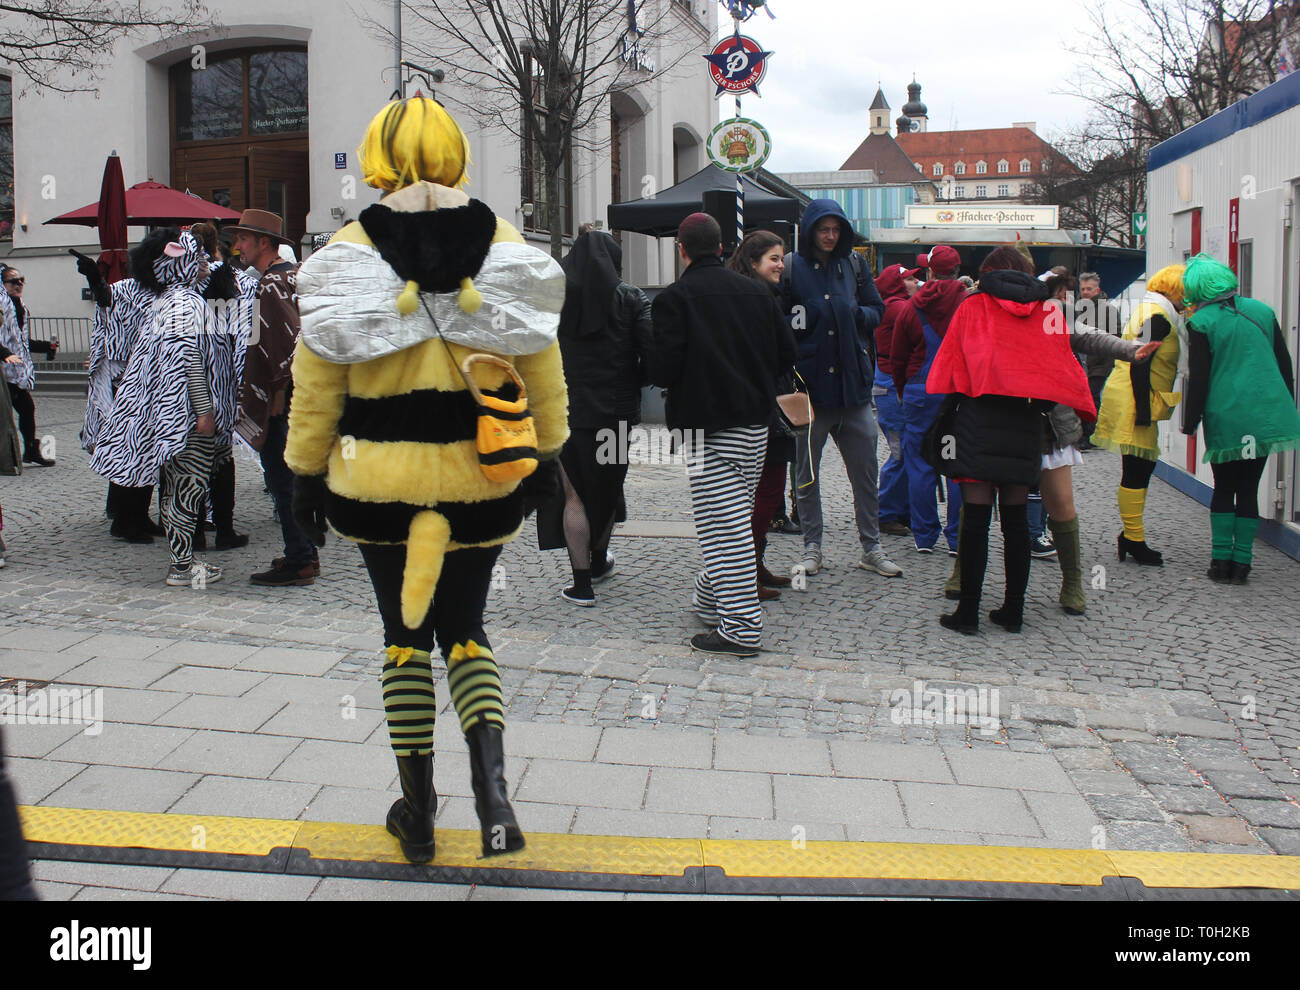 Frau verkleidet als Biene an Karneval. Karneval Kostüm gegen Biene Tod war beliebt in München, Deutschland. Stockfoto